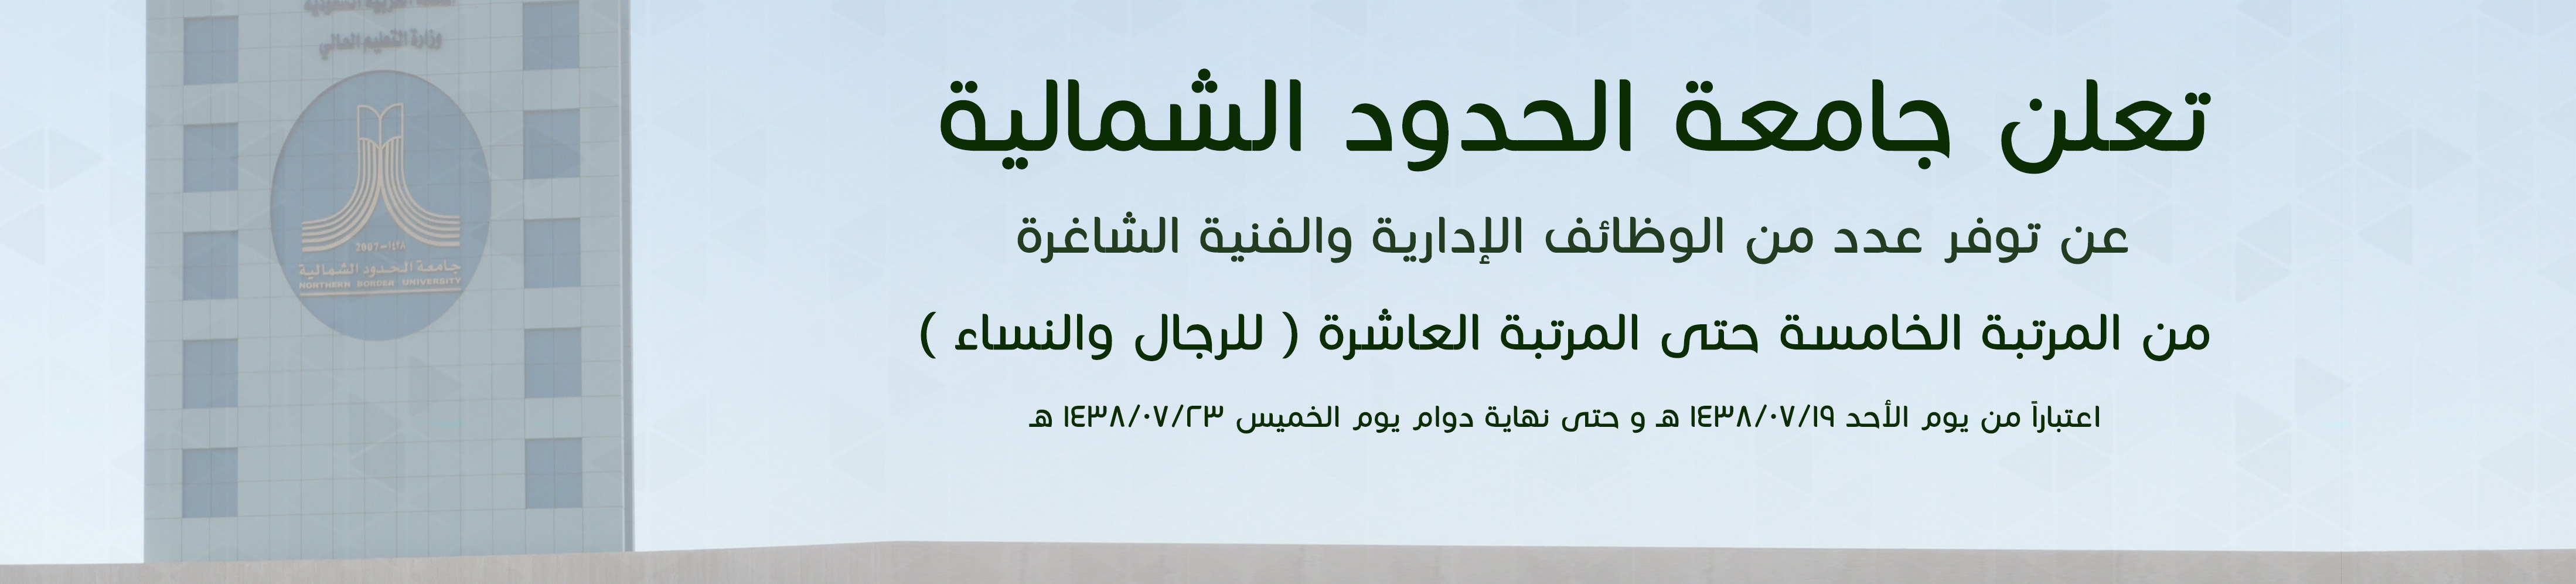 جامعة الشمالية تعلن عن وظائف إدارية وفنية للسعوديين‫ رجال – نساء